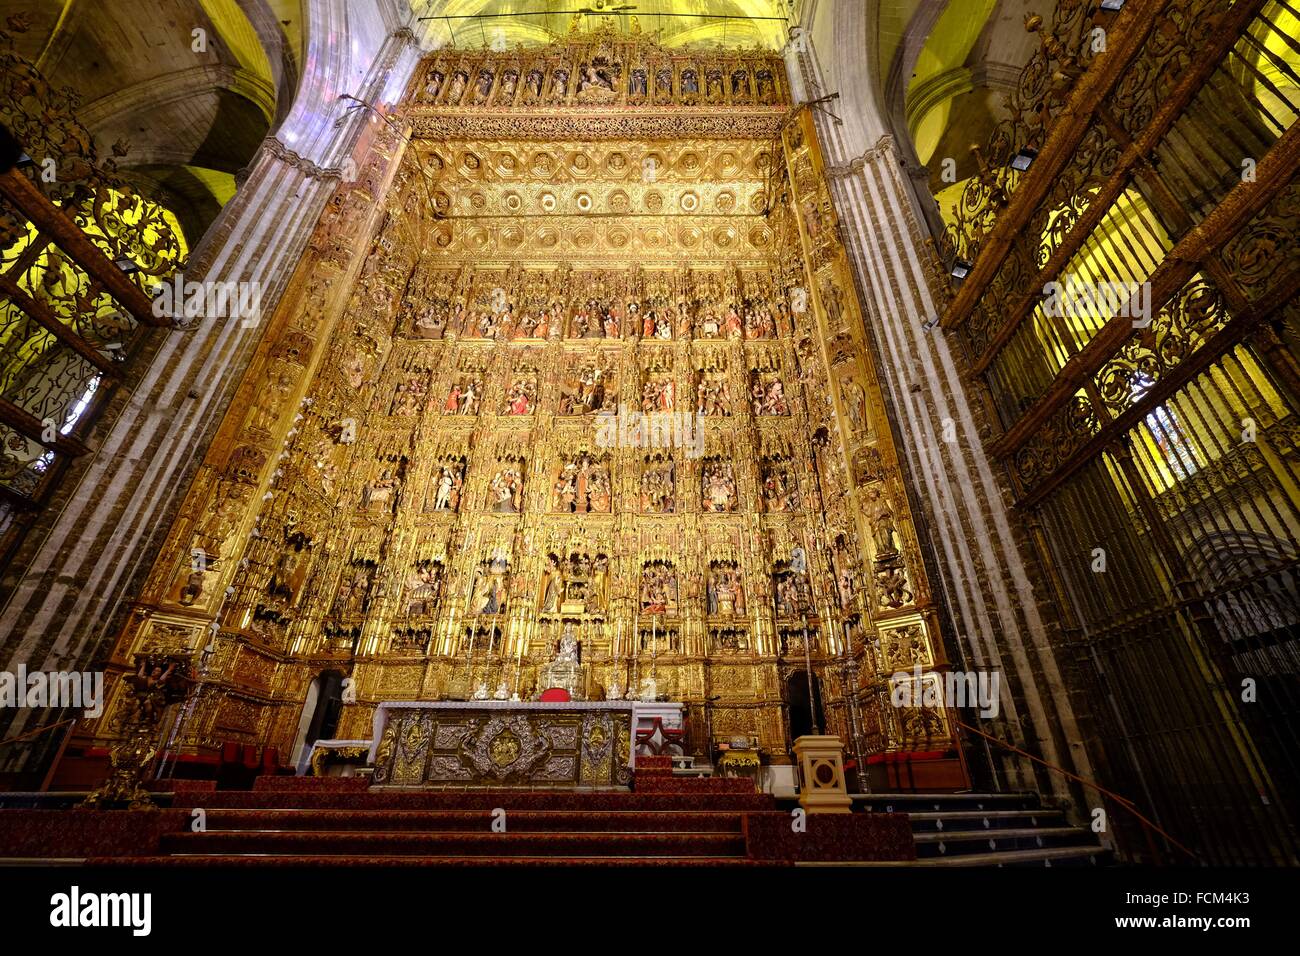 Pierre Dancart capolavoro, considerato uno dei più raffinati dipinti nel mondo, la Cattedrale di Siviglia, in Andalusia, Spagna. Foto Stock